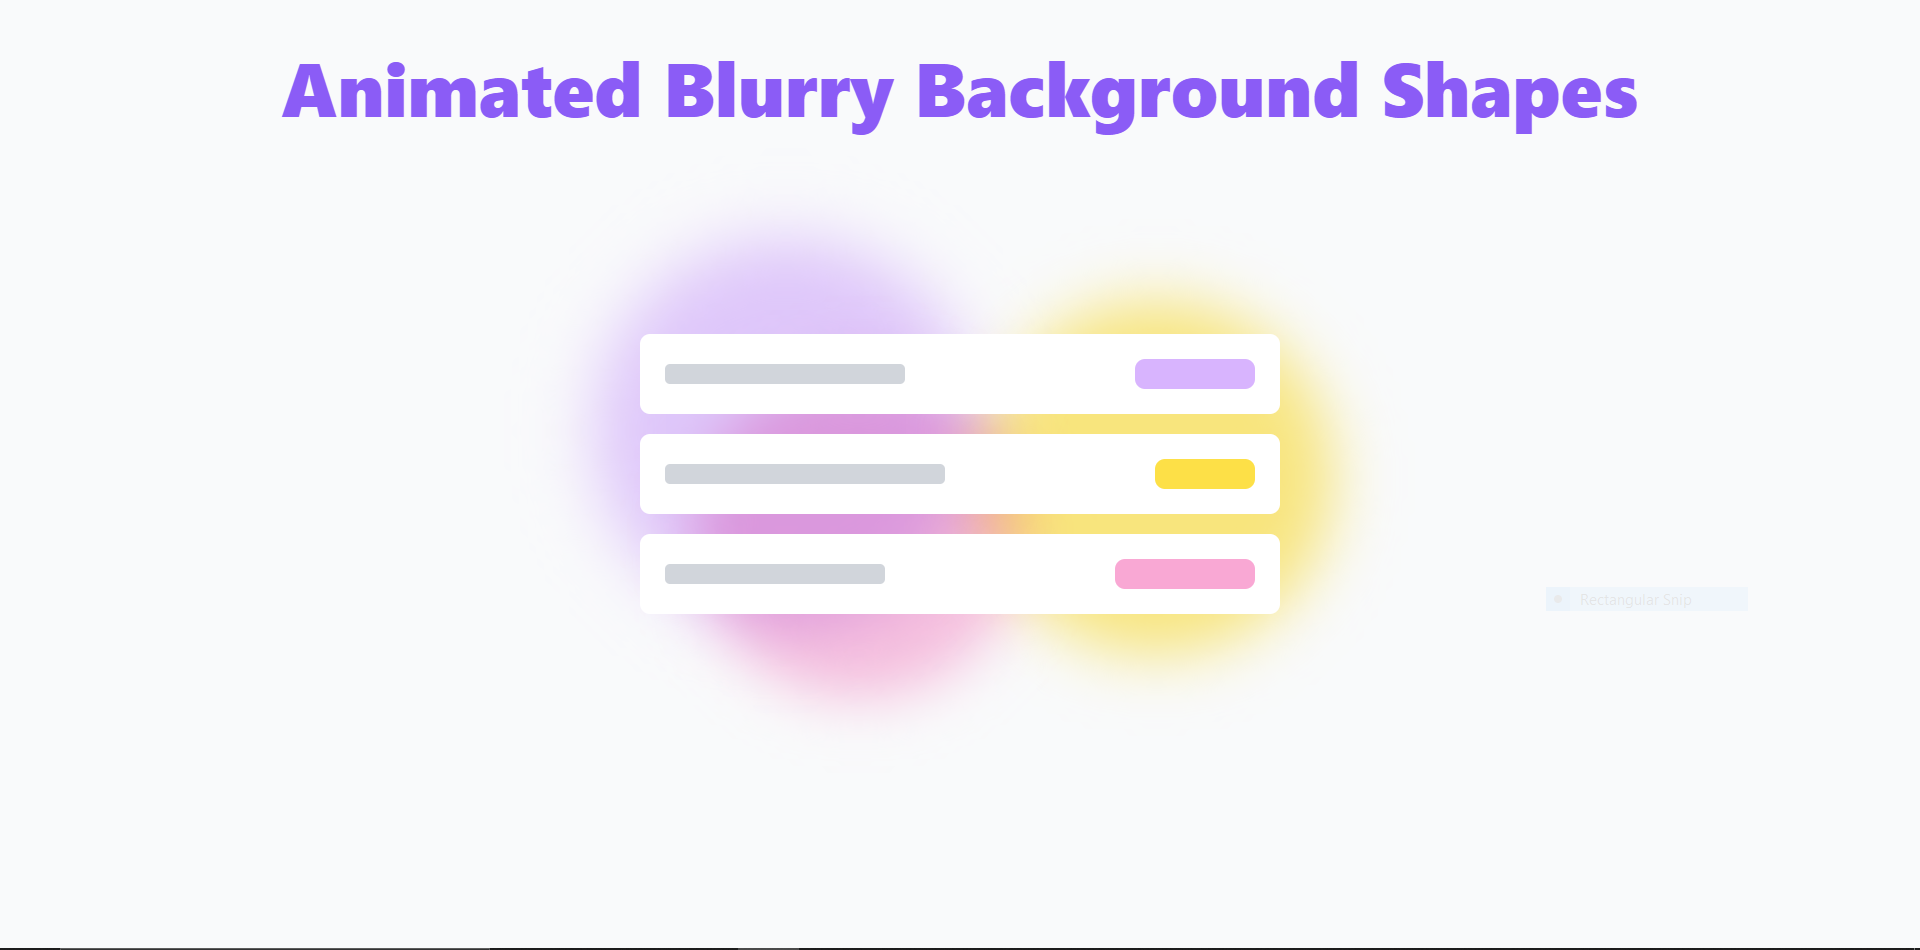 Blurry, Animated Shapes, Tailwind CSS: Kết hợp giữa Blurry, Animated Shapes và Tailwind CSS sẽ giúp cho trang web của bạn trở nên độc đáo và thu hút. Xem hình ảnh để tìm hiểu cách những yếu tố này tạo nên một sự khác biệt cho trang web của bạn. 